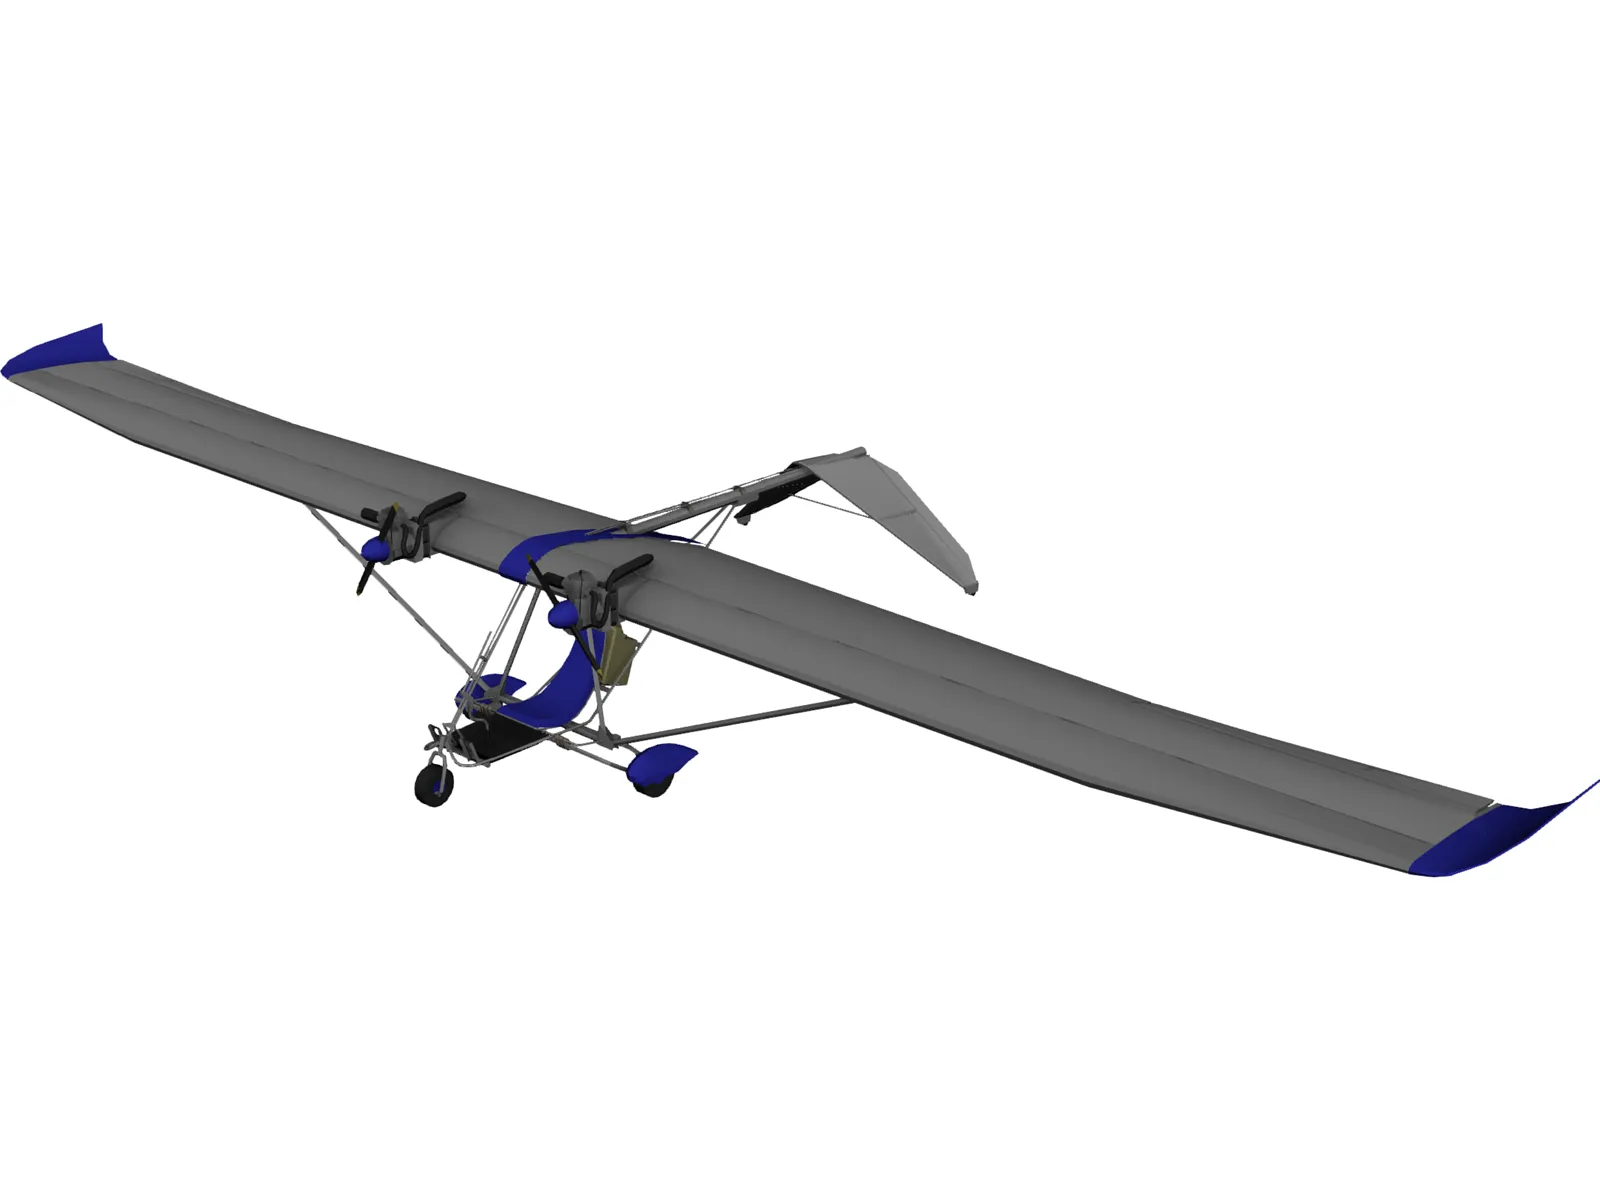 Ultra Light Aircraft 3D Model